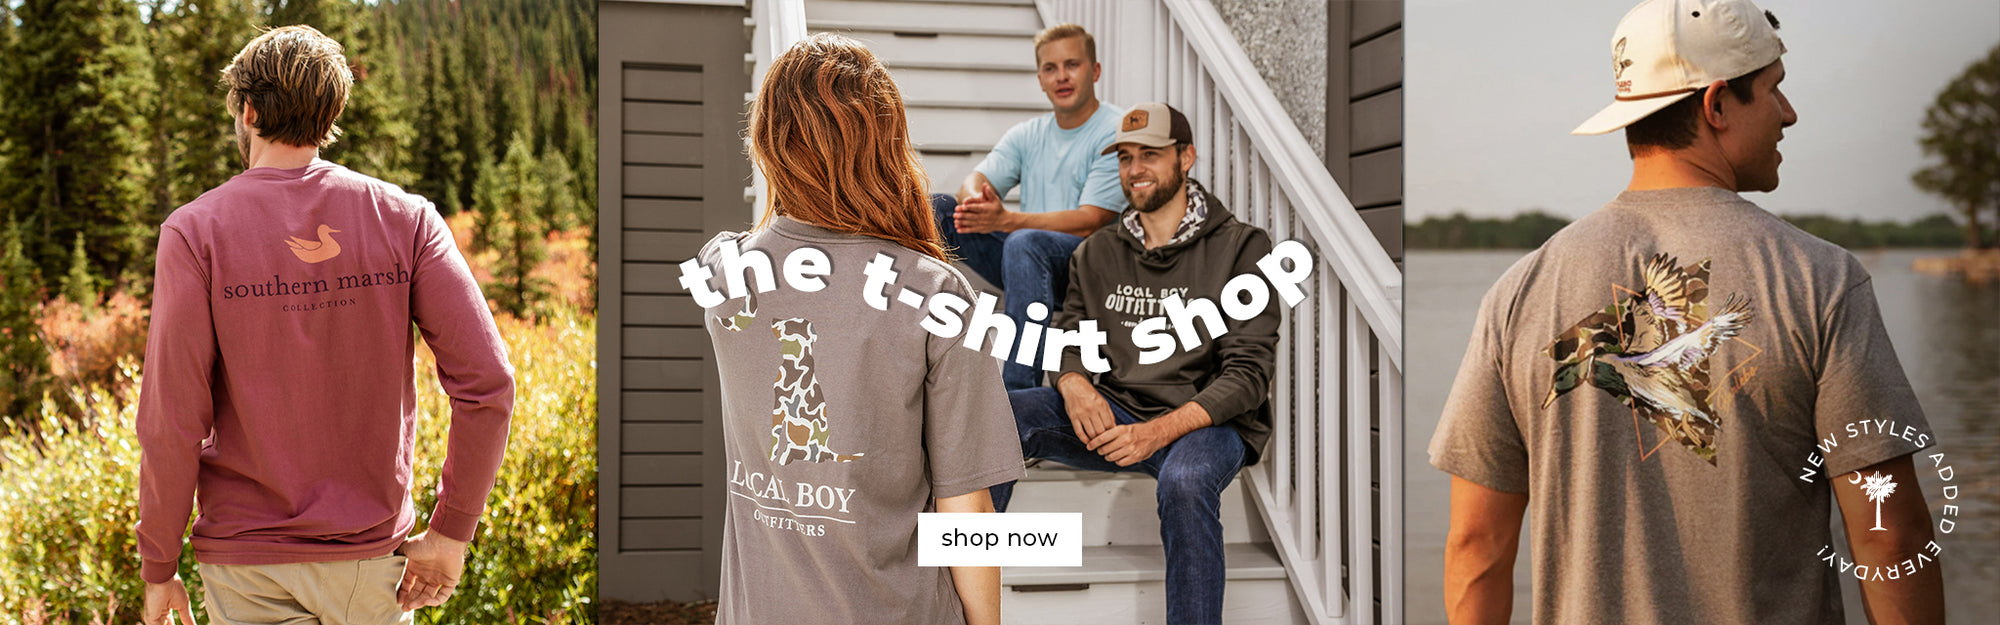 shop t-shirts at palmettomoononline.com